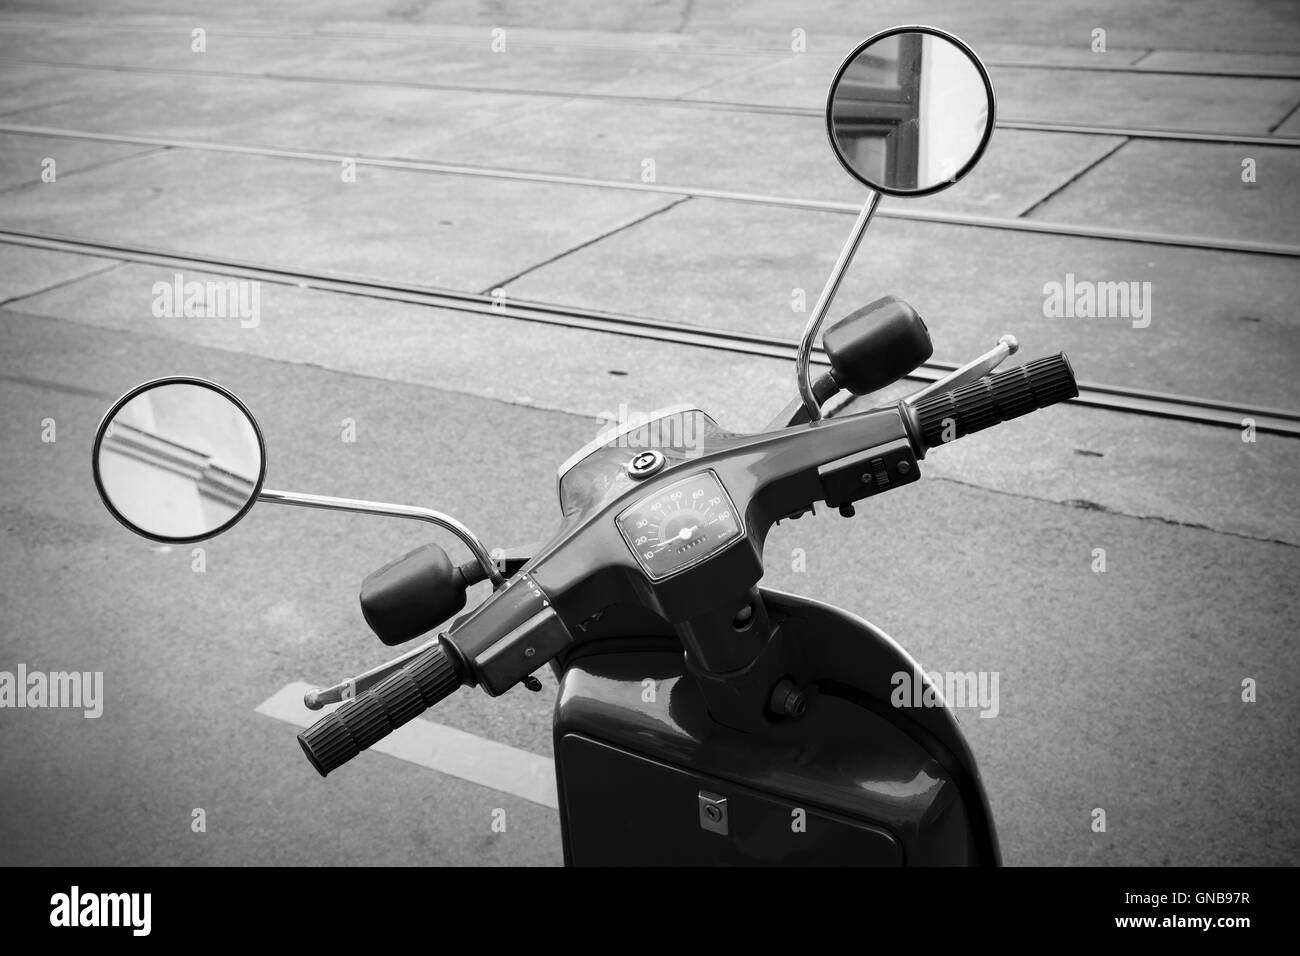 Ancien guidon scooter italien avec tachymètre et miroirs, vintage sépia photo stylisée Banque D'Images